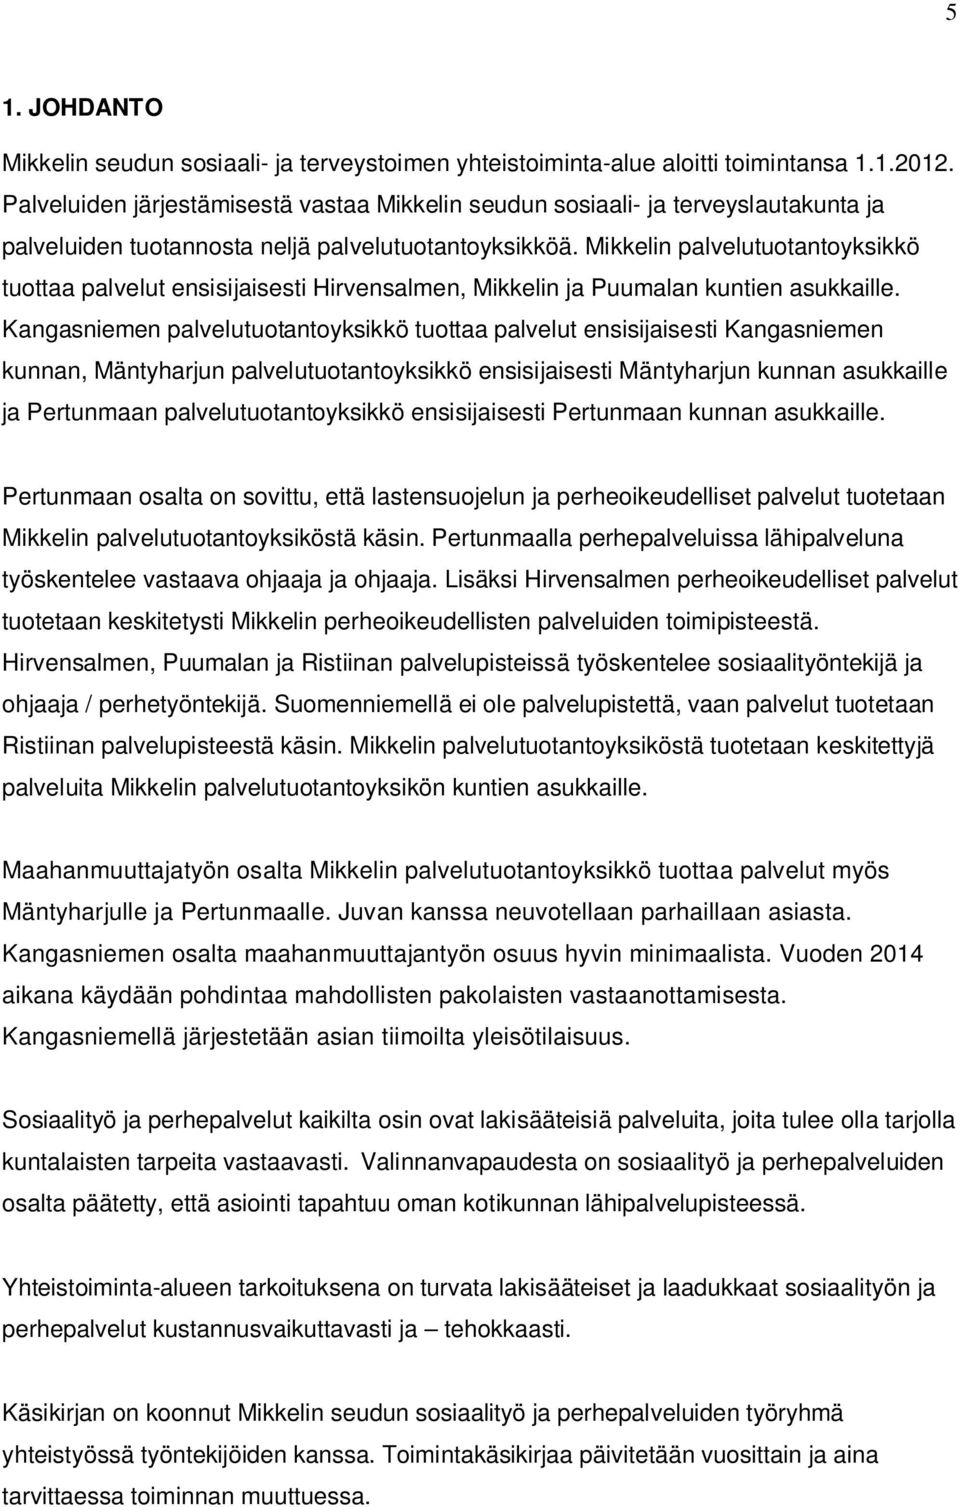 Mikkelin palvelutuotantoyksikkö tuottaa palvelut ensisijaisesti Hirvensalmen, Mikkelin ja Puumalan kuntien asukkaille.